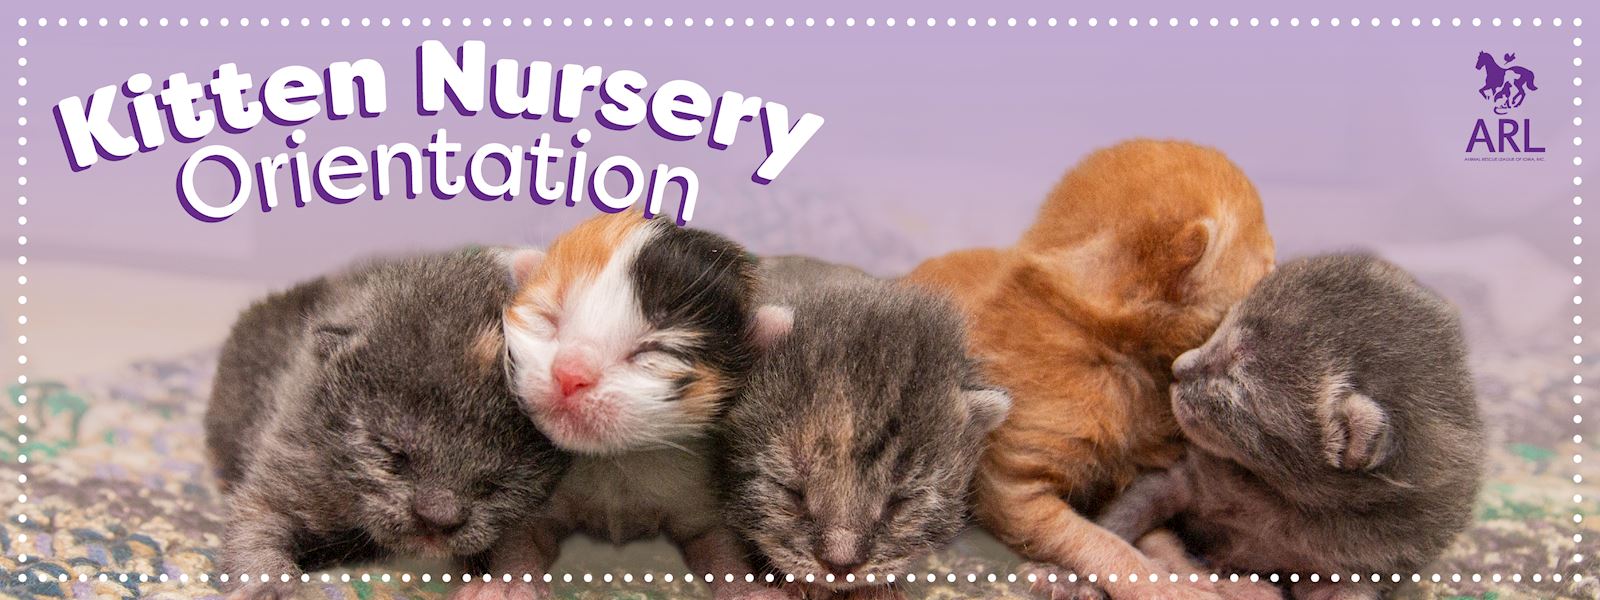 kitten nursery orientation web slider